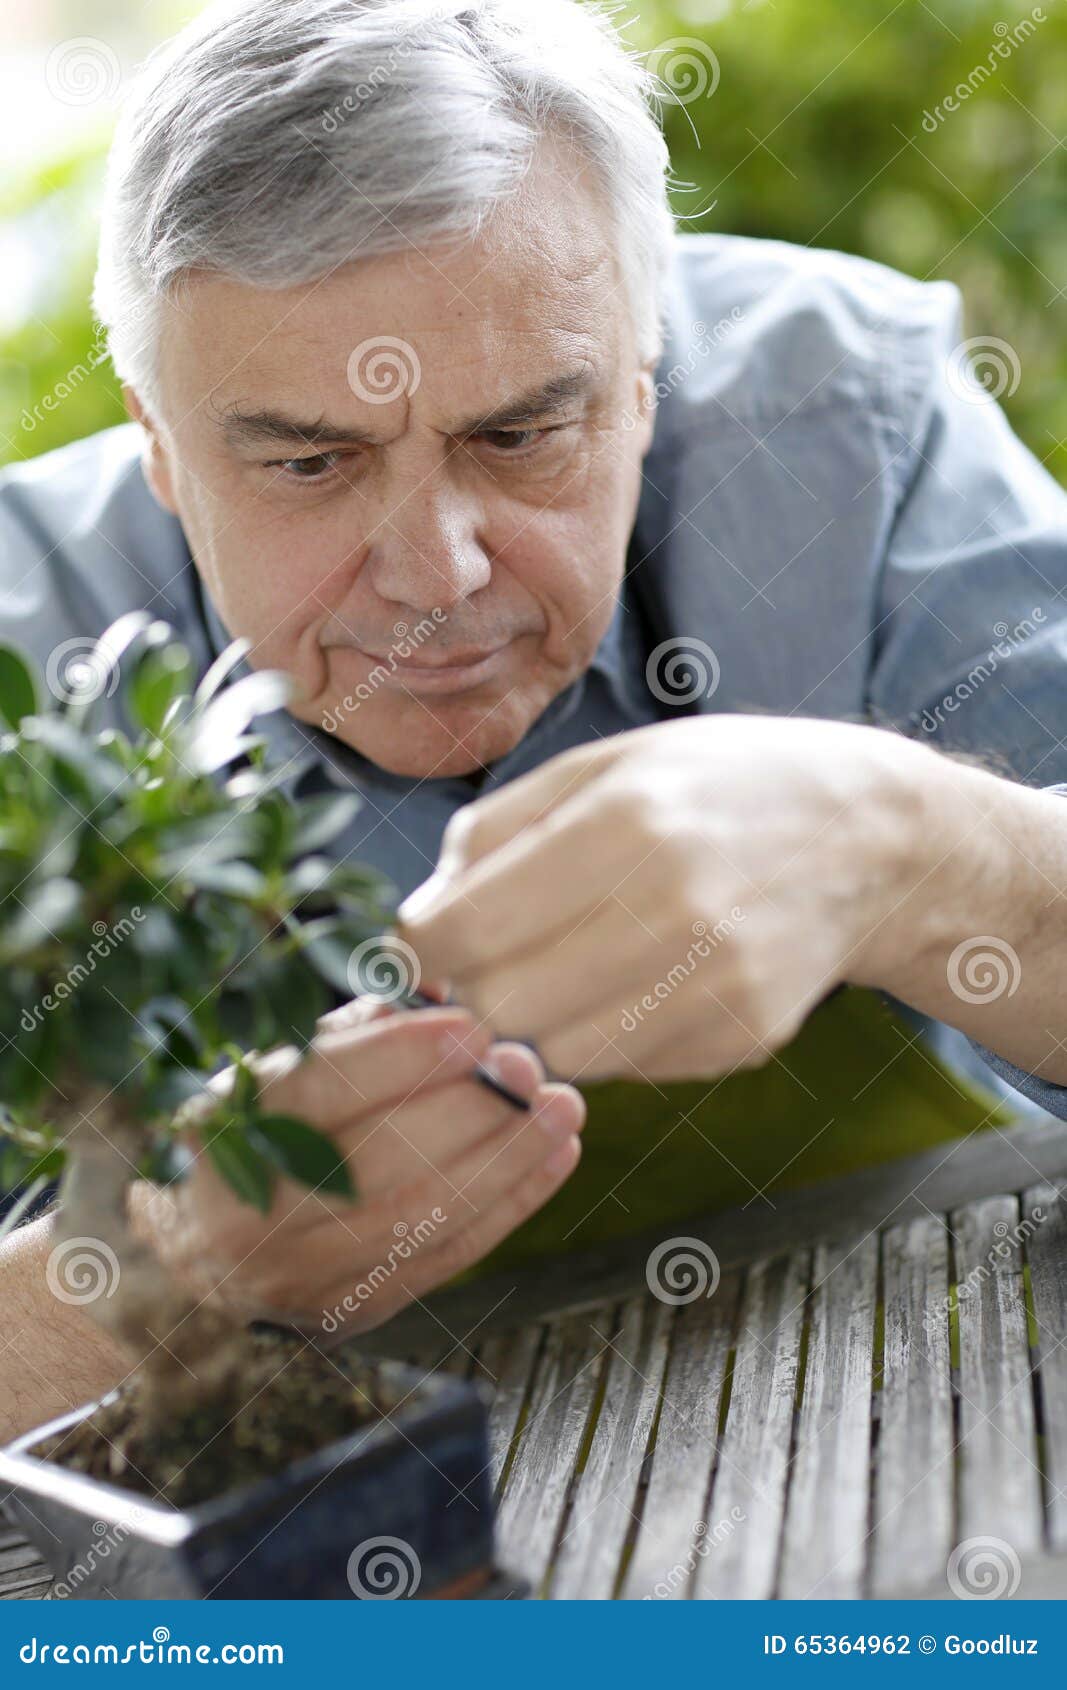 活跃的亚洲老人在修剪花园种植的绿色植物时微笑的画像动物植物免费下载_jpg格式_3840像素_编号40607354-千图网